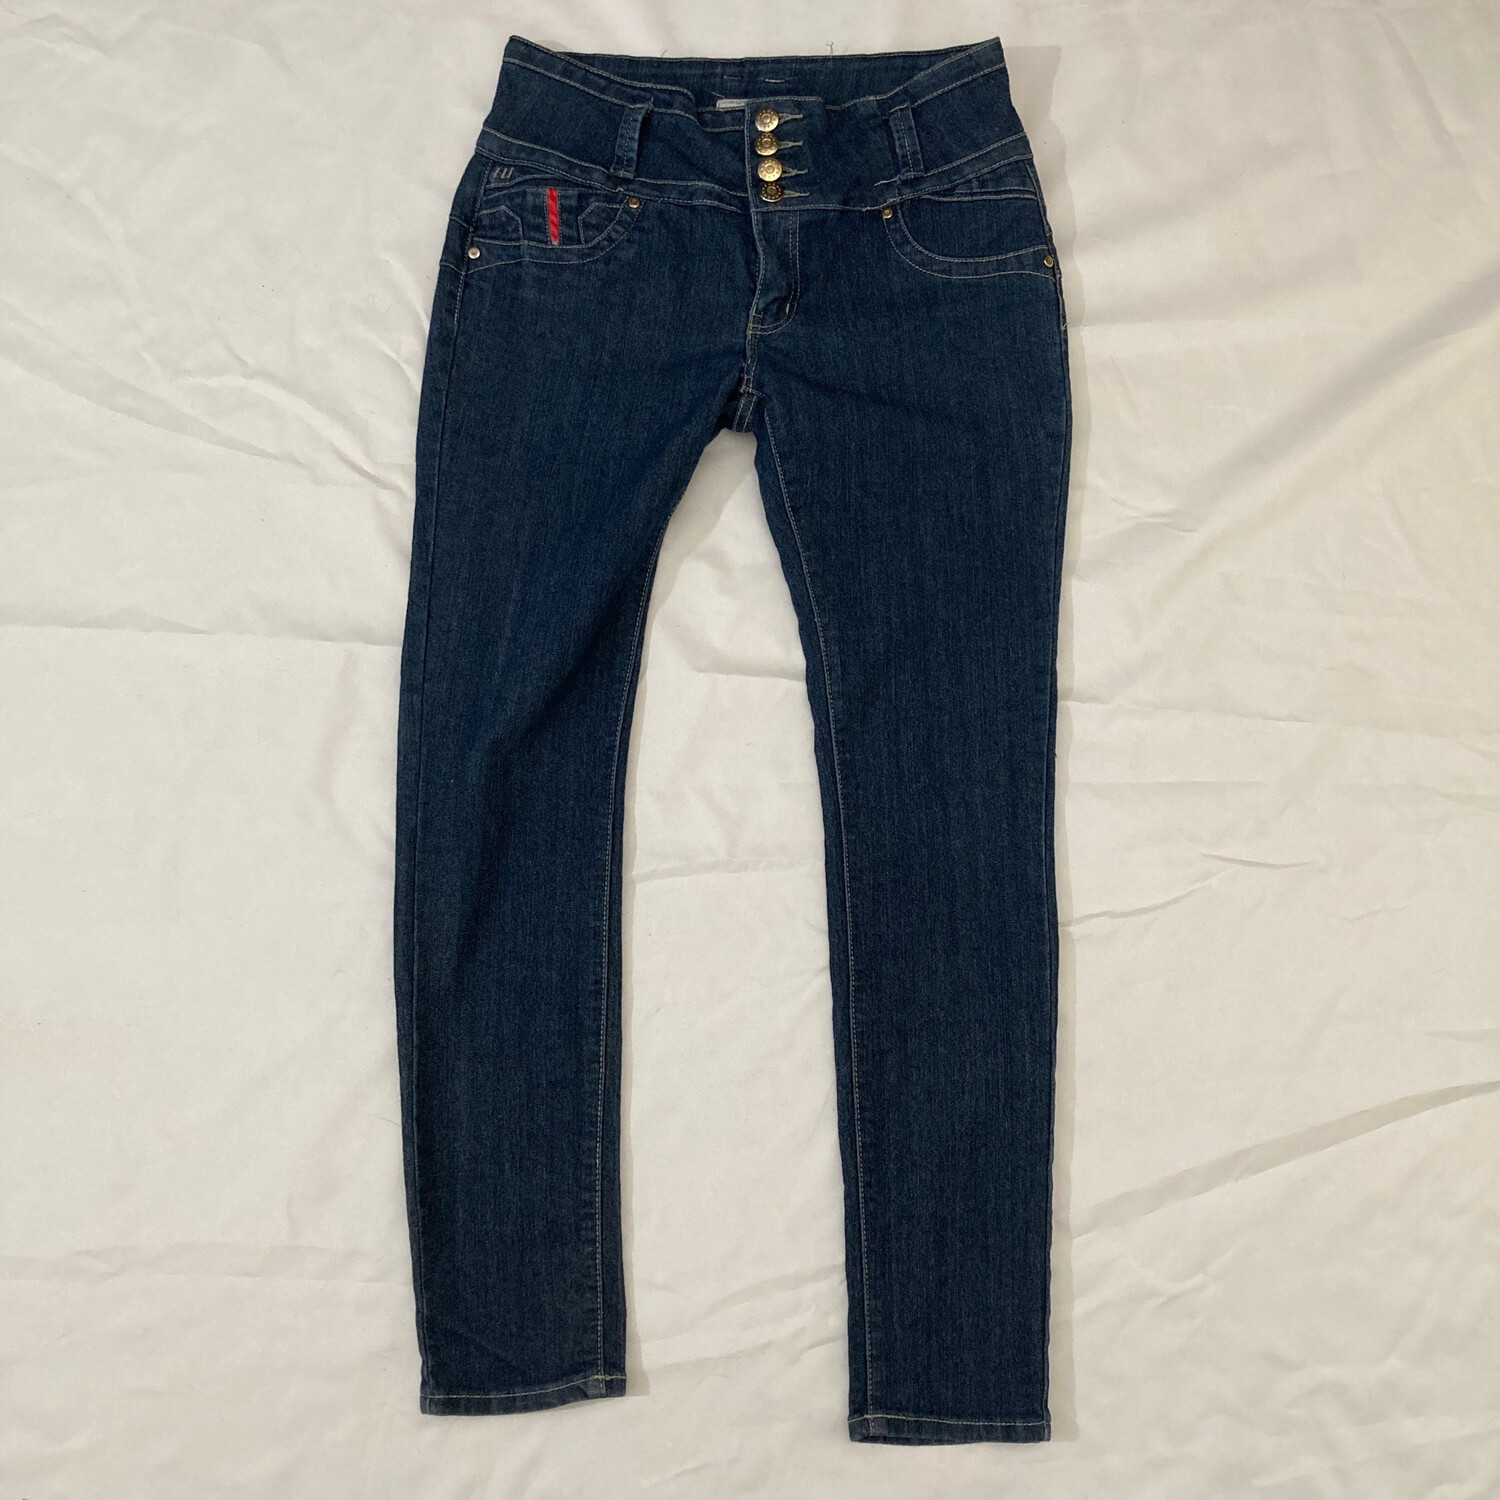 Vintage Lizz Jeans